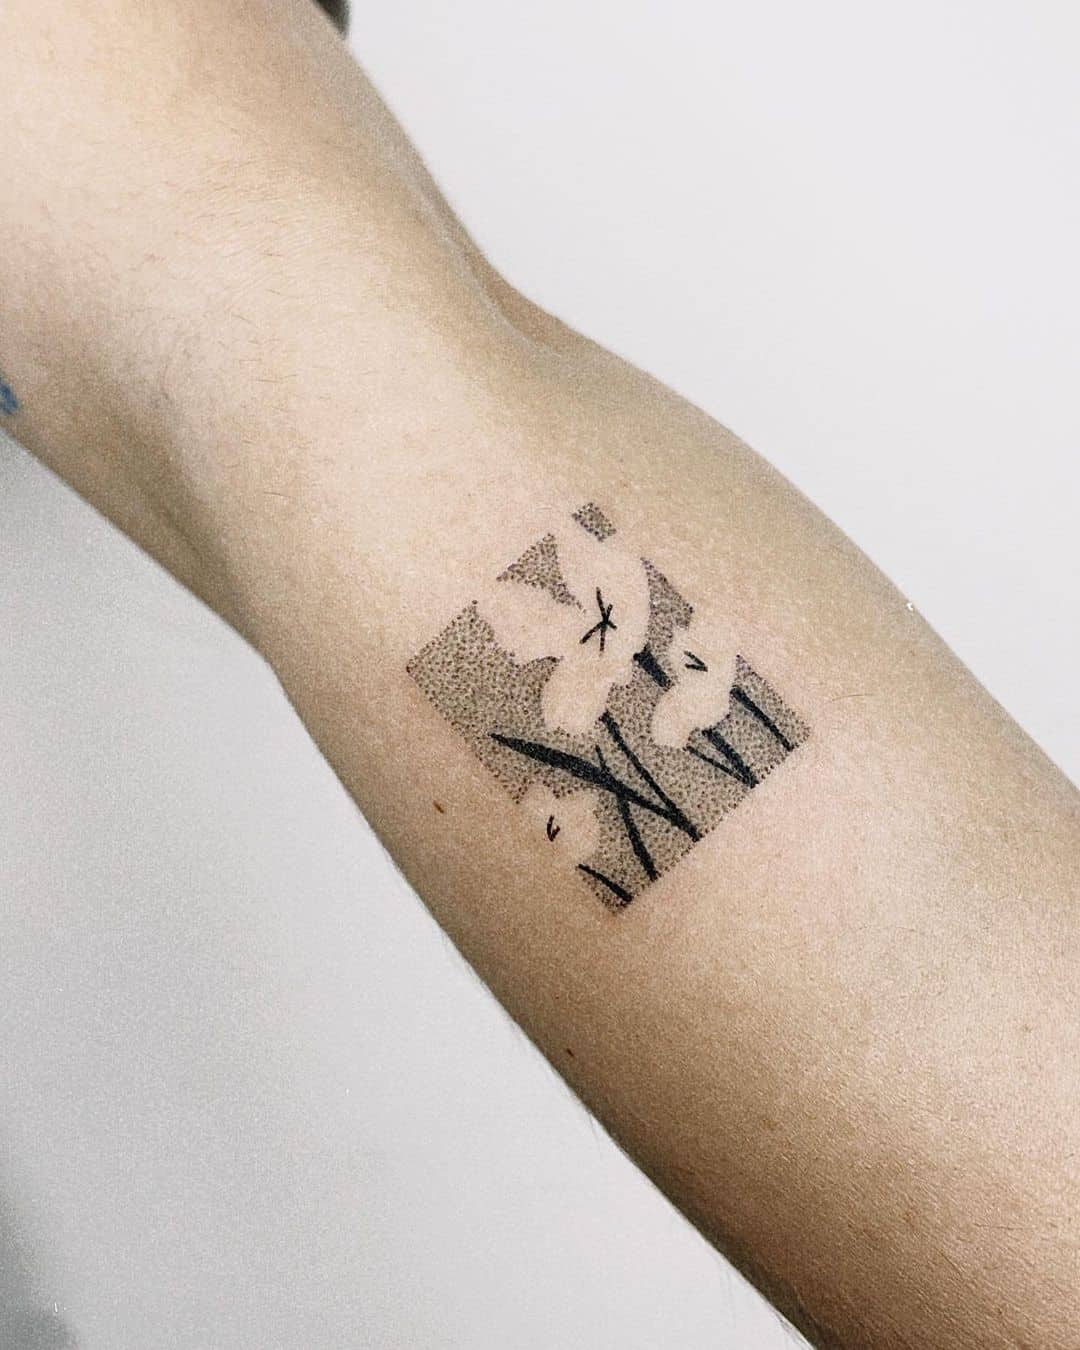 Small tattoo by nao.tat